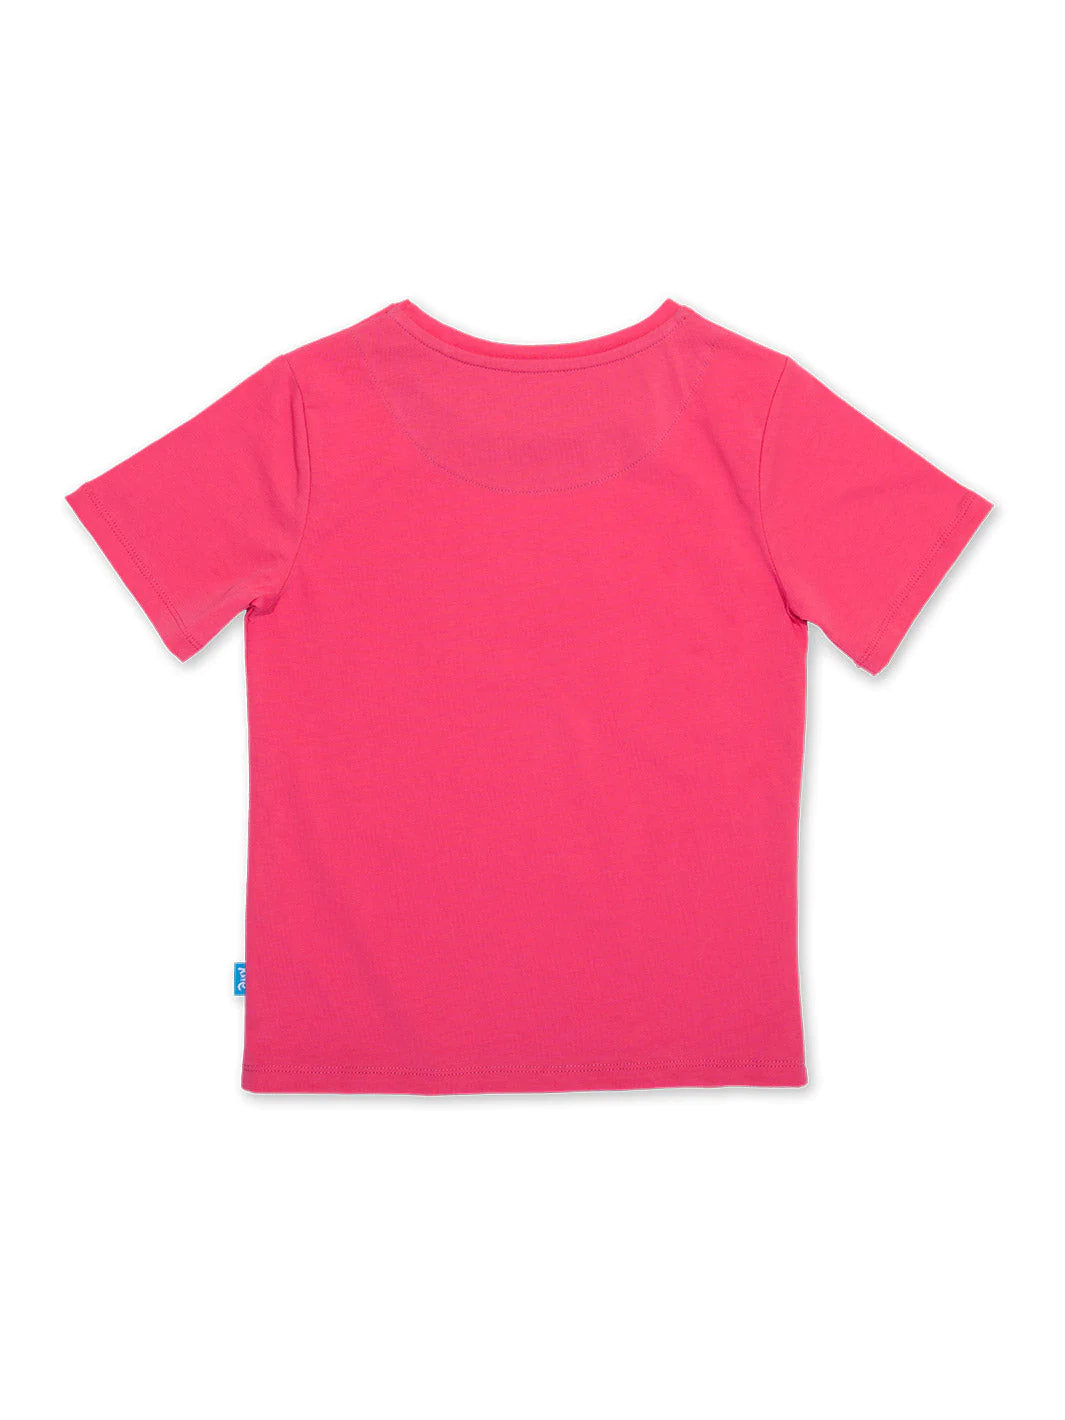 Kite Planet Bumble T-Shirt  - Pink